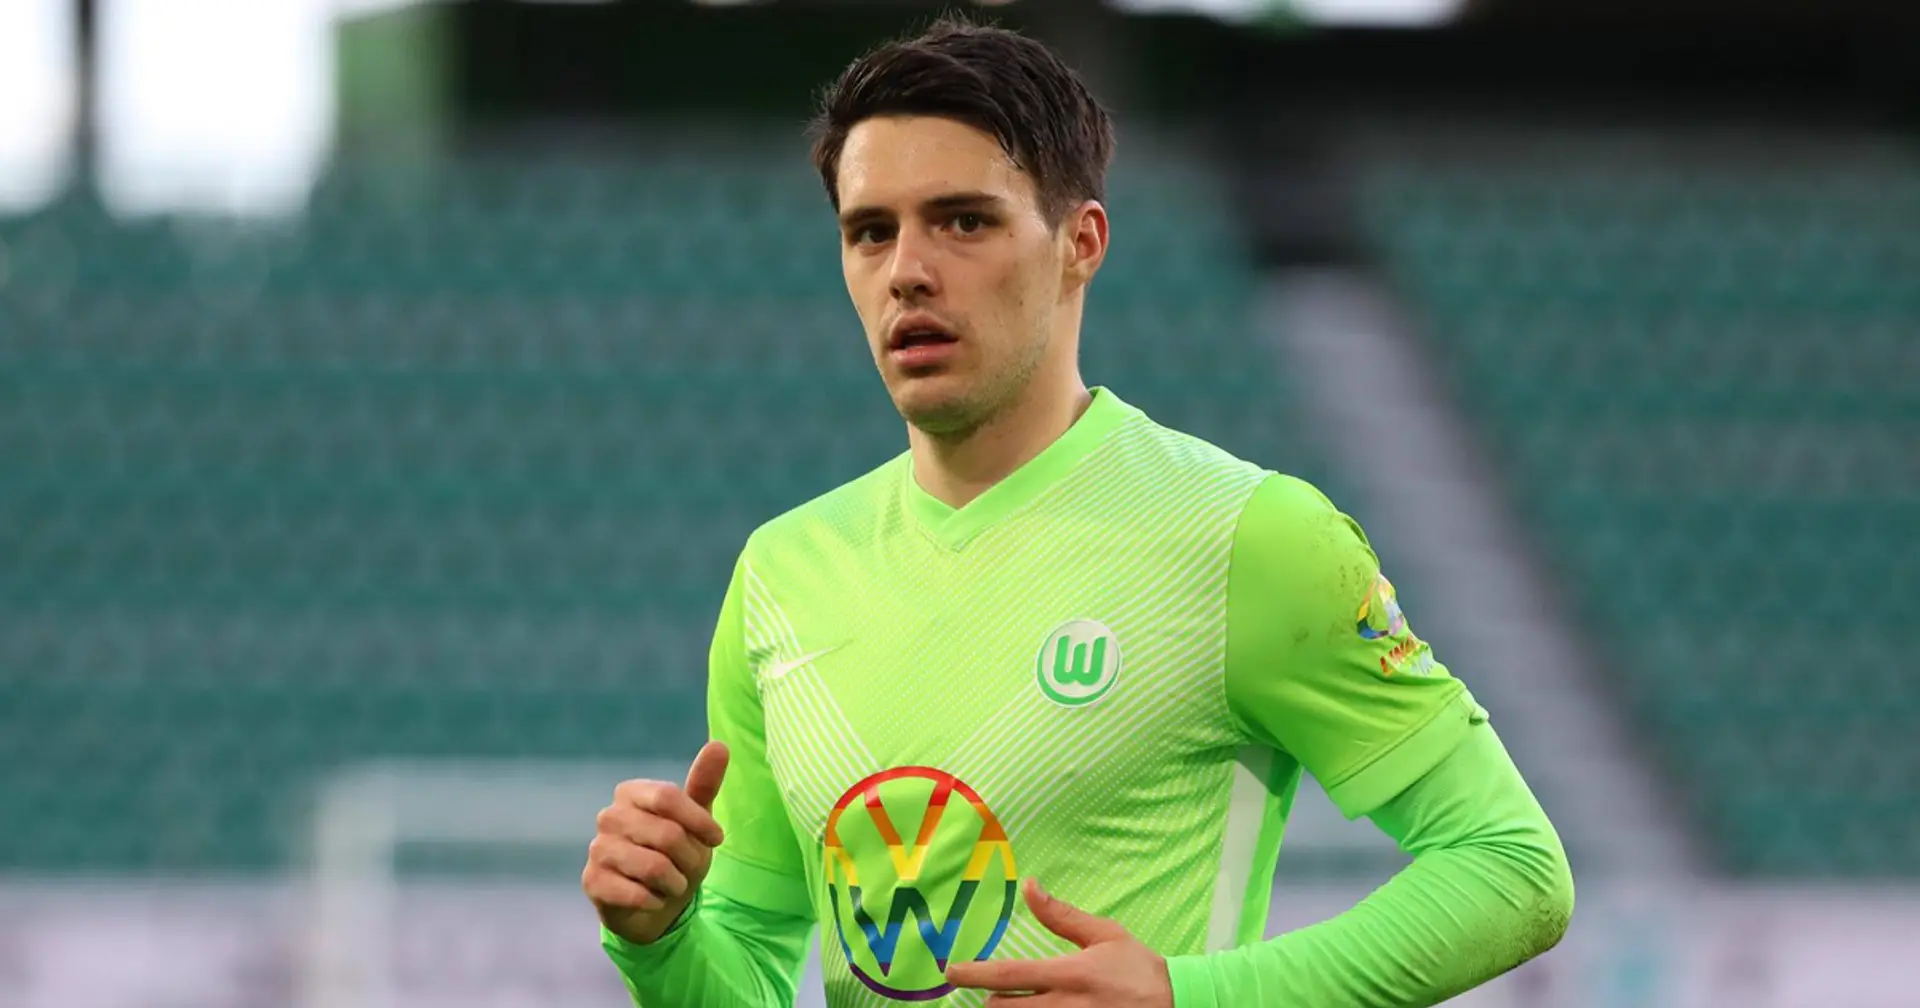 Bericht: Bayern ist einer der Klubs, die sich für den VfL-Flügelspieler Josip Brekalo interessieren (Zuverlässigkeit: 3 Sterne)